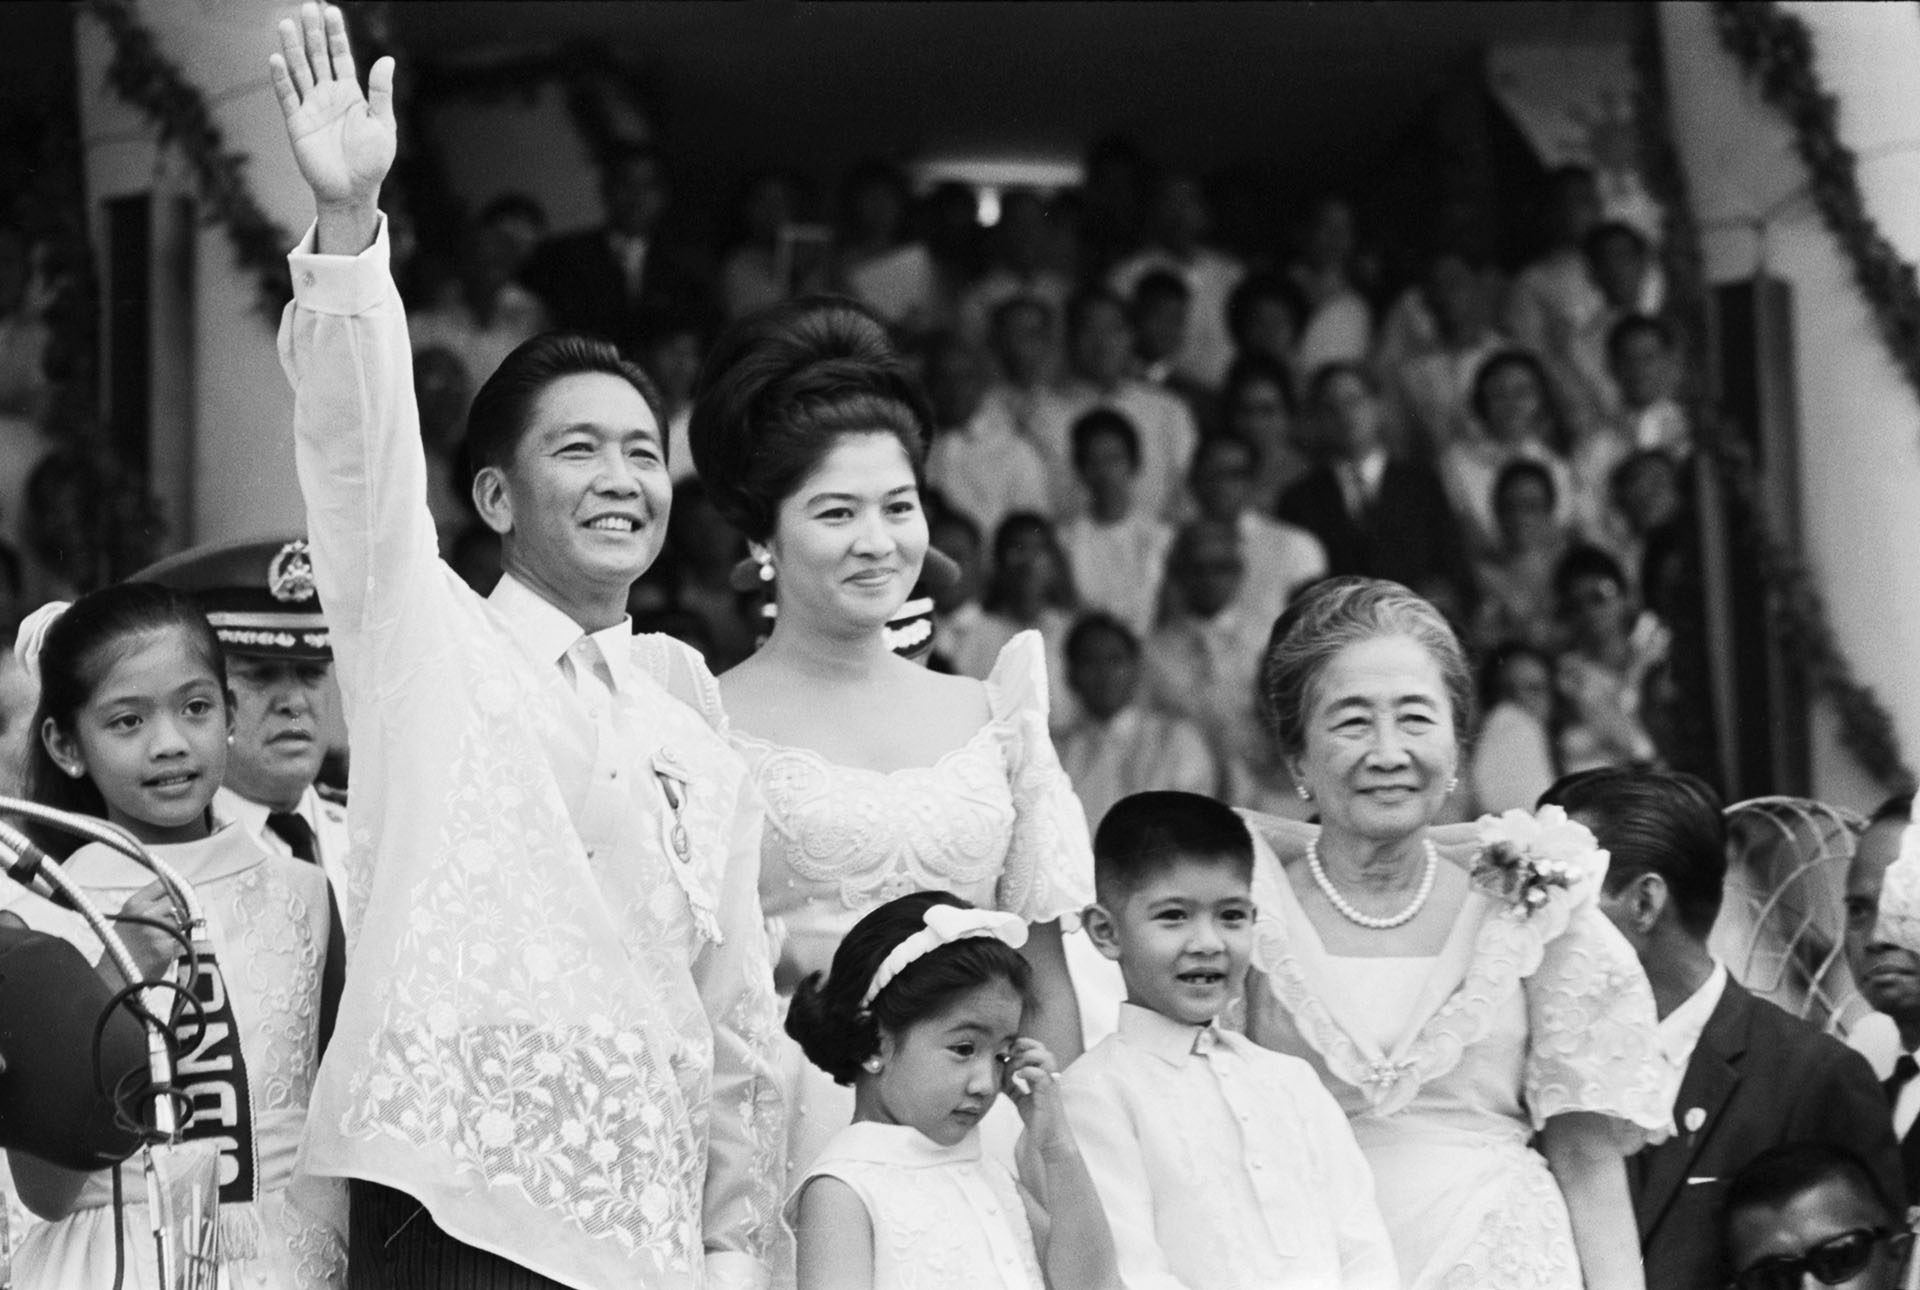 La familia Marcos saluda en el acto de inauguración de su primer periodo presidencial. Se mantuvo como presidente desde 1965 hasta 1986